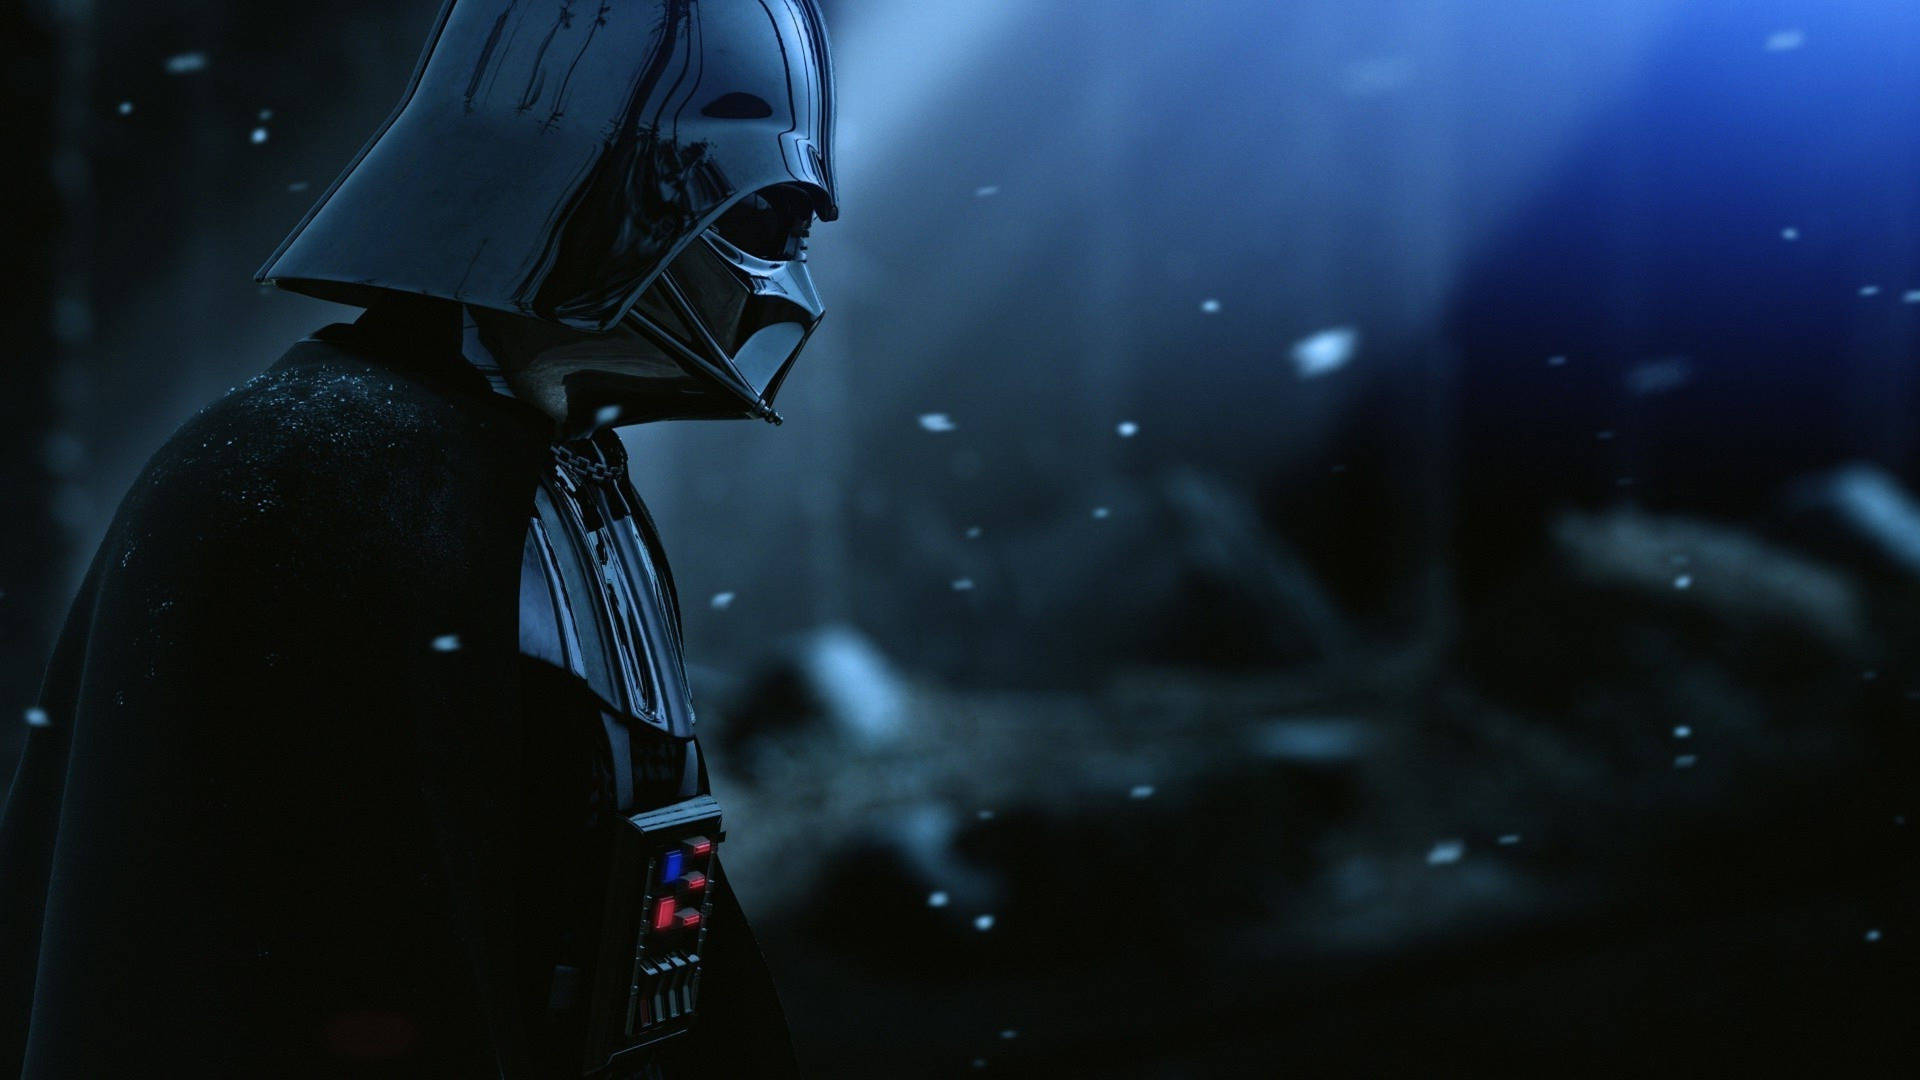 Star Wars Darth Vader Background